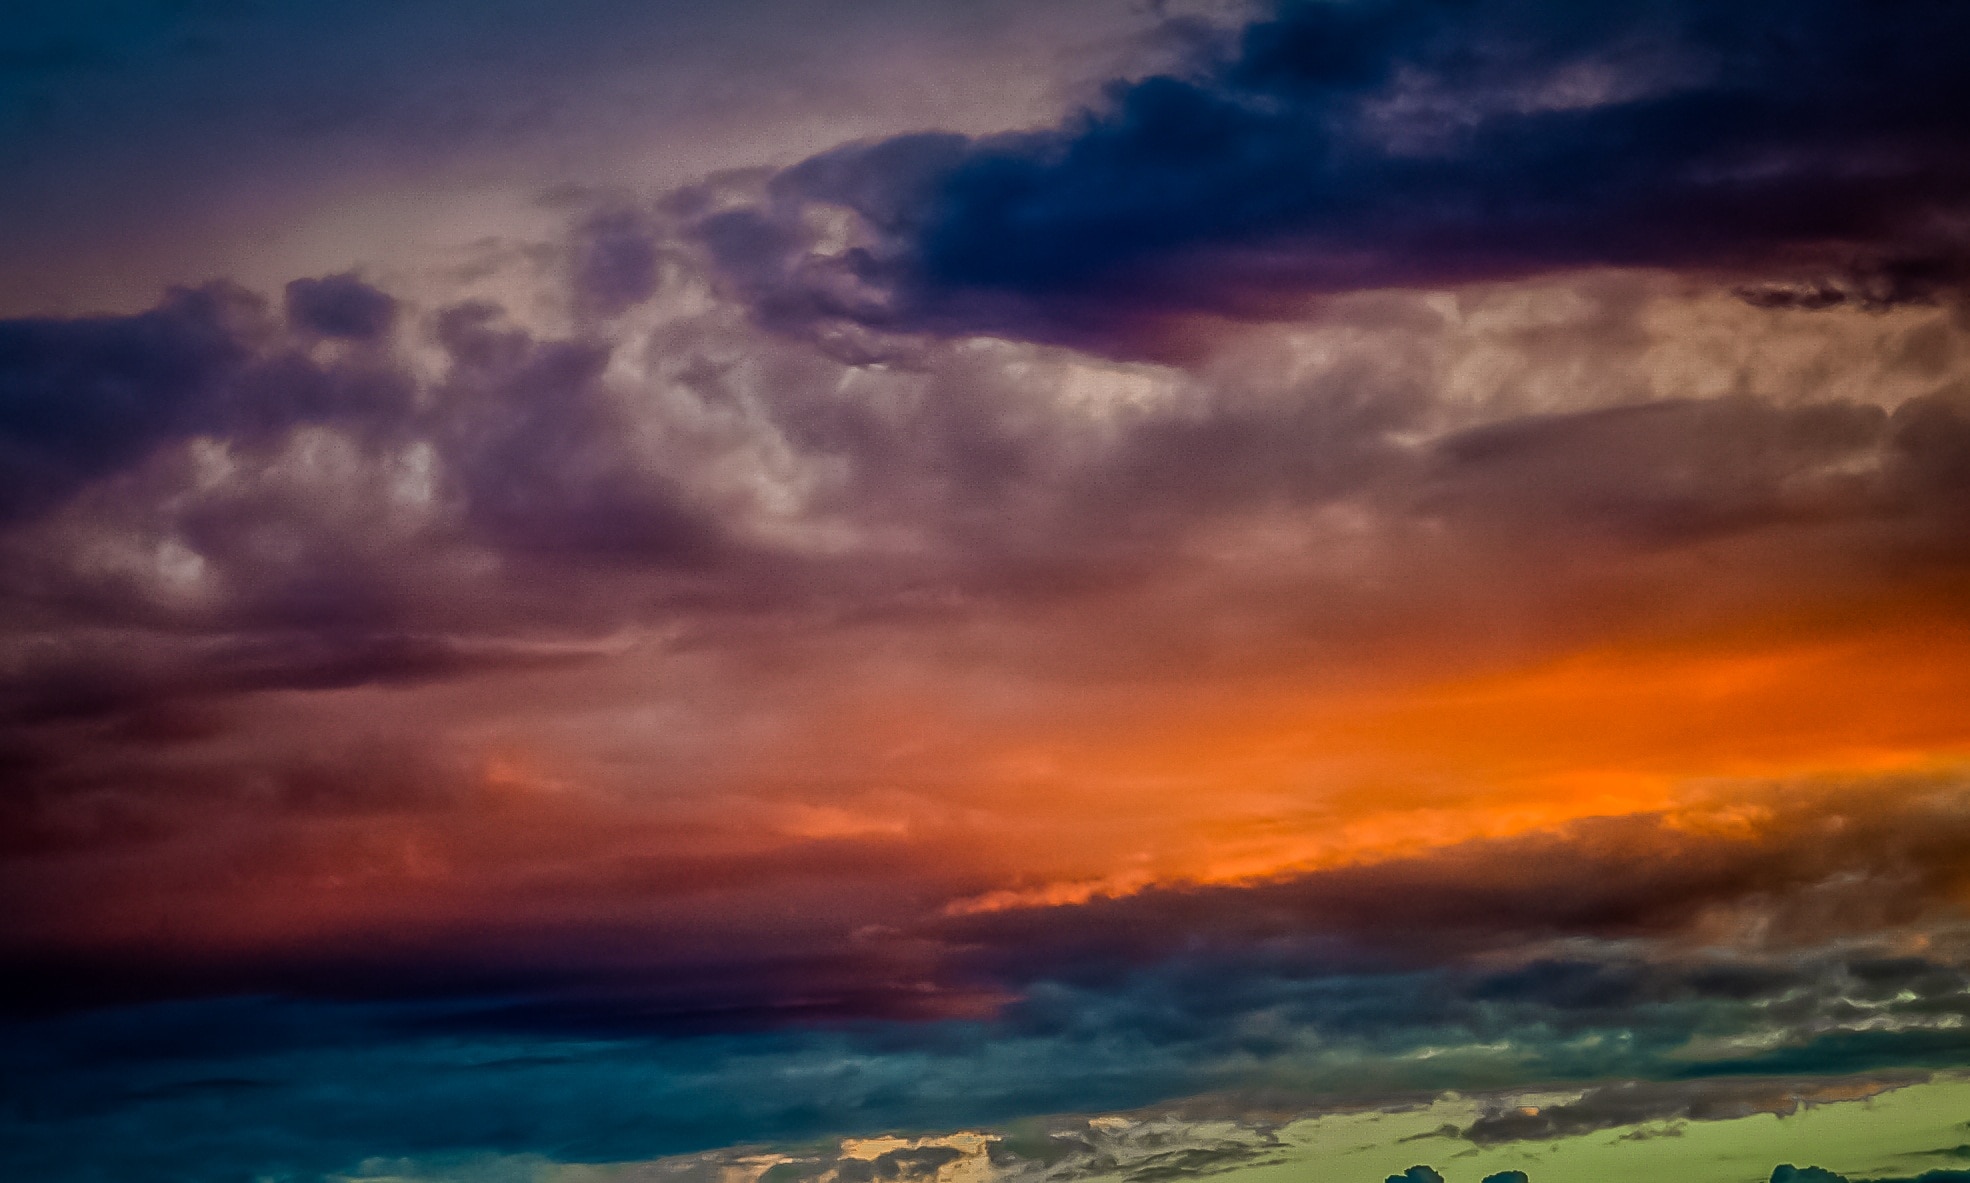 cumulunimbus clouds during sunset painting